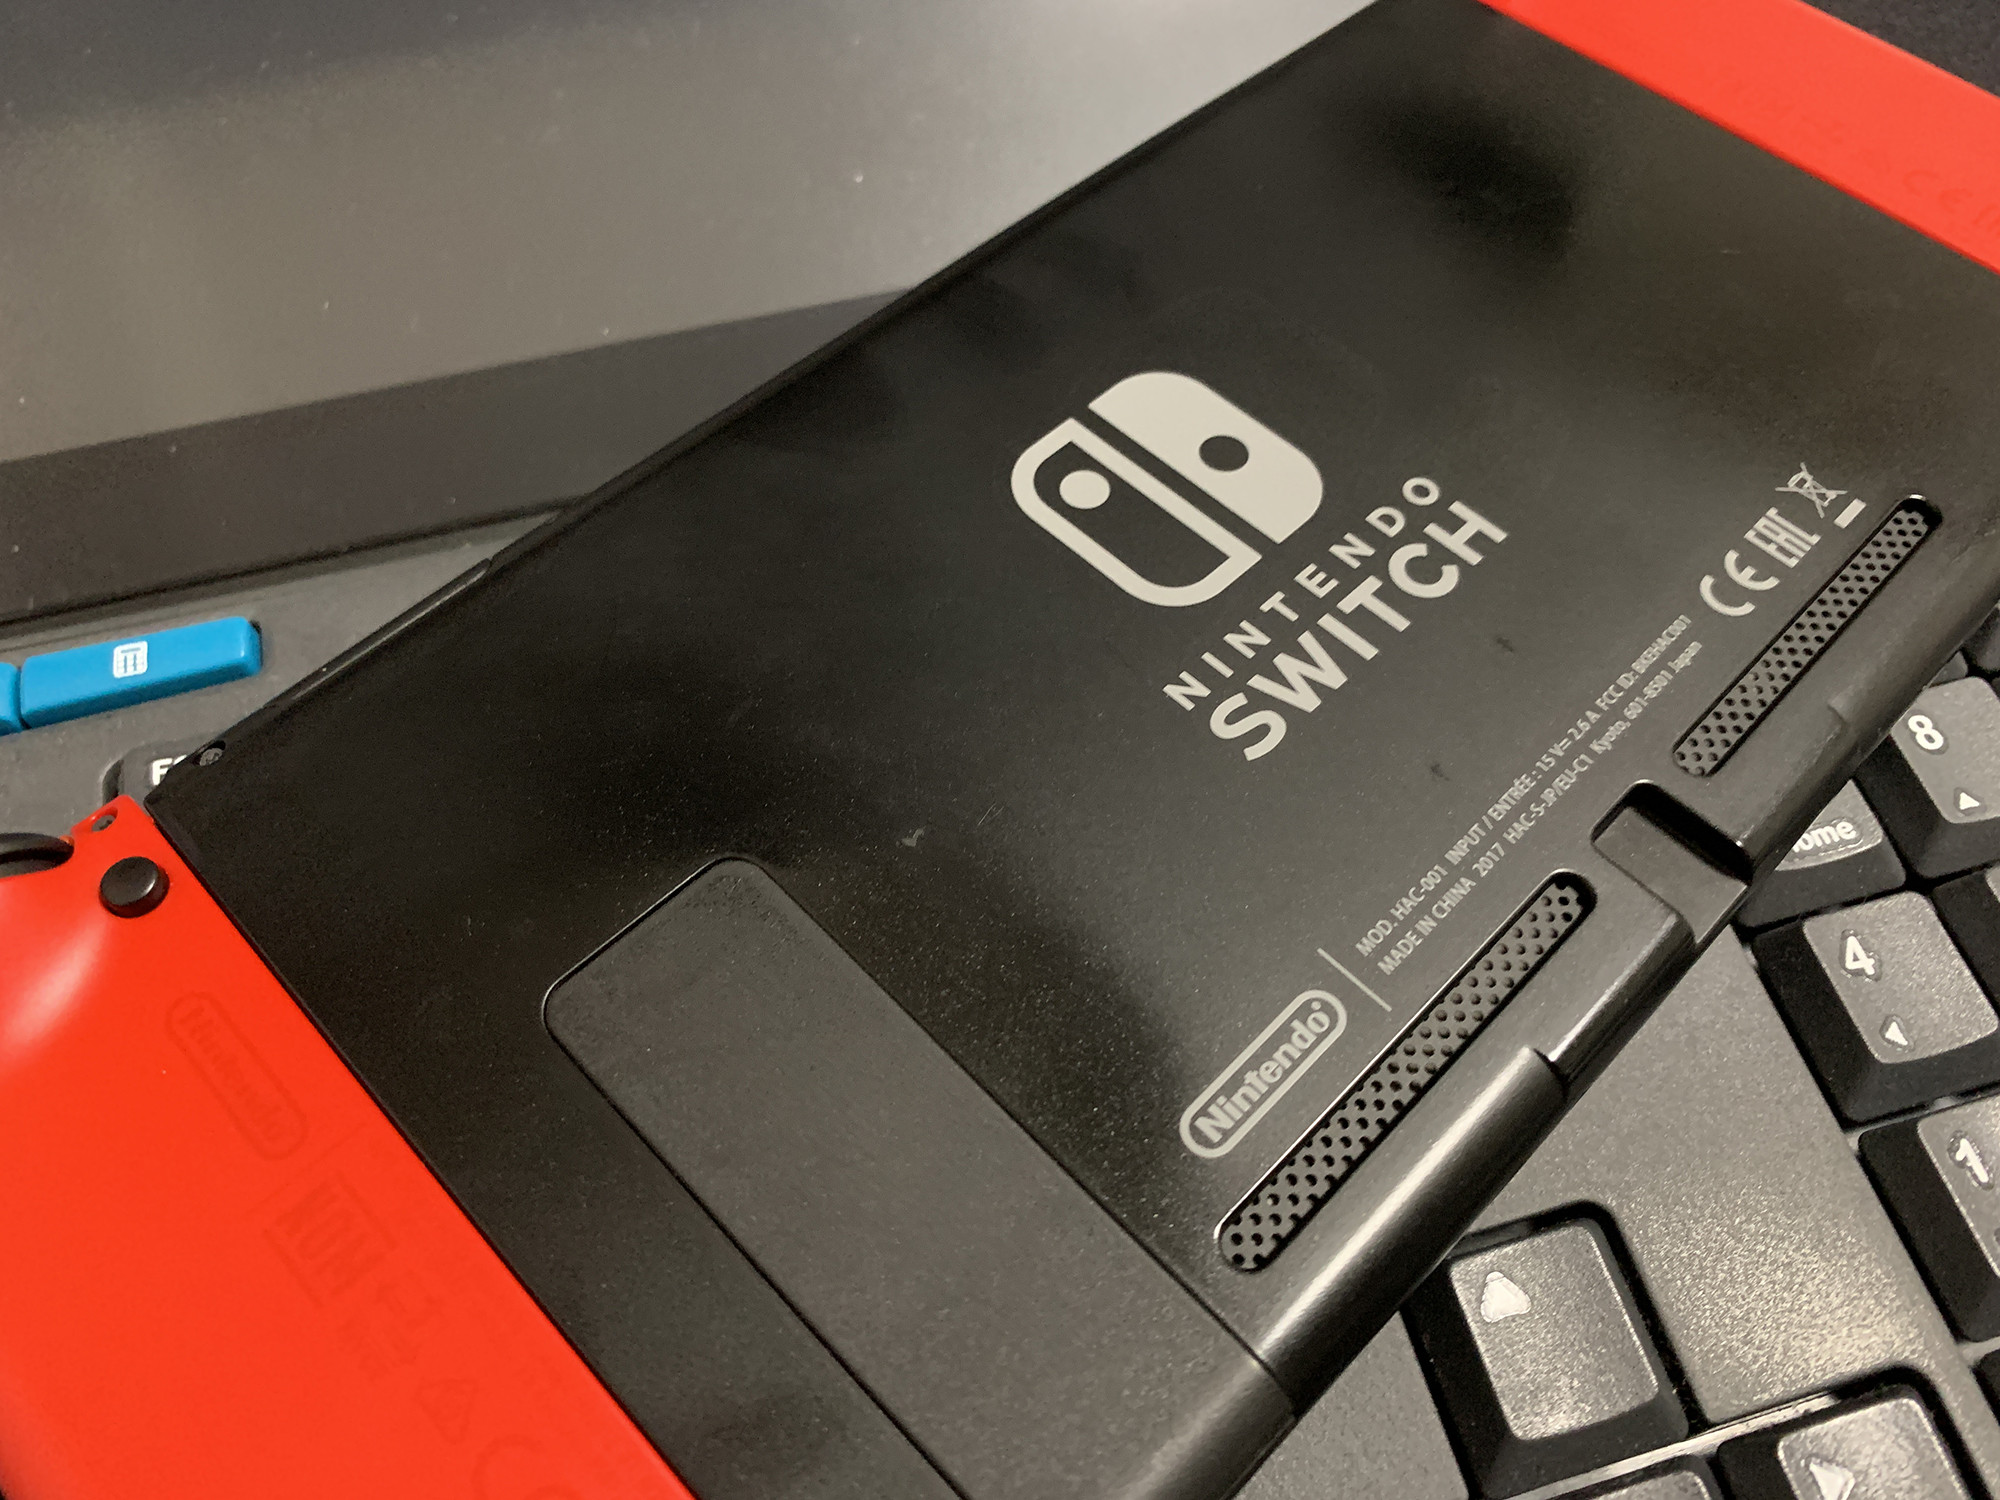 Nintendo Switch本体 裏カバーテカリ問題 カバー交換 ケロケロちゃんねる ブログ版